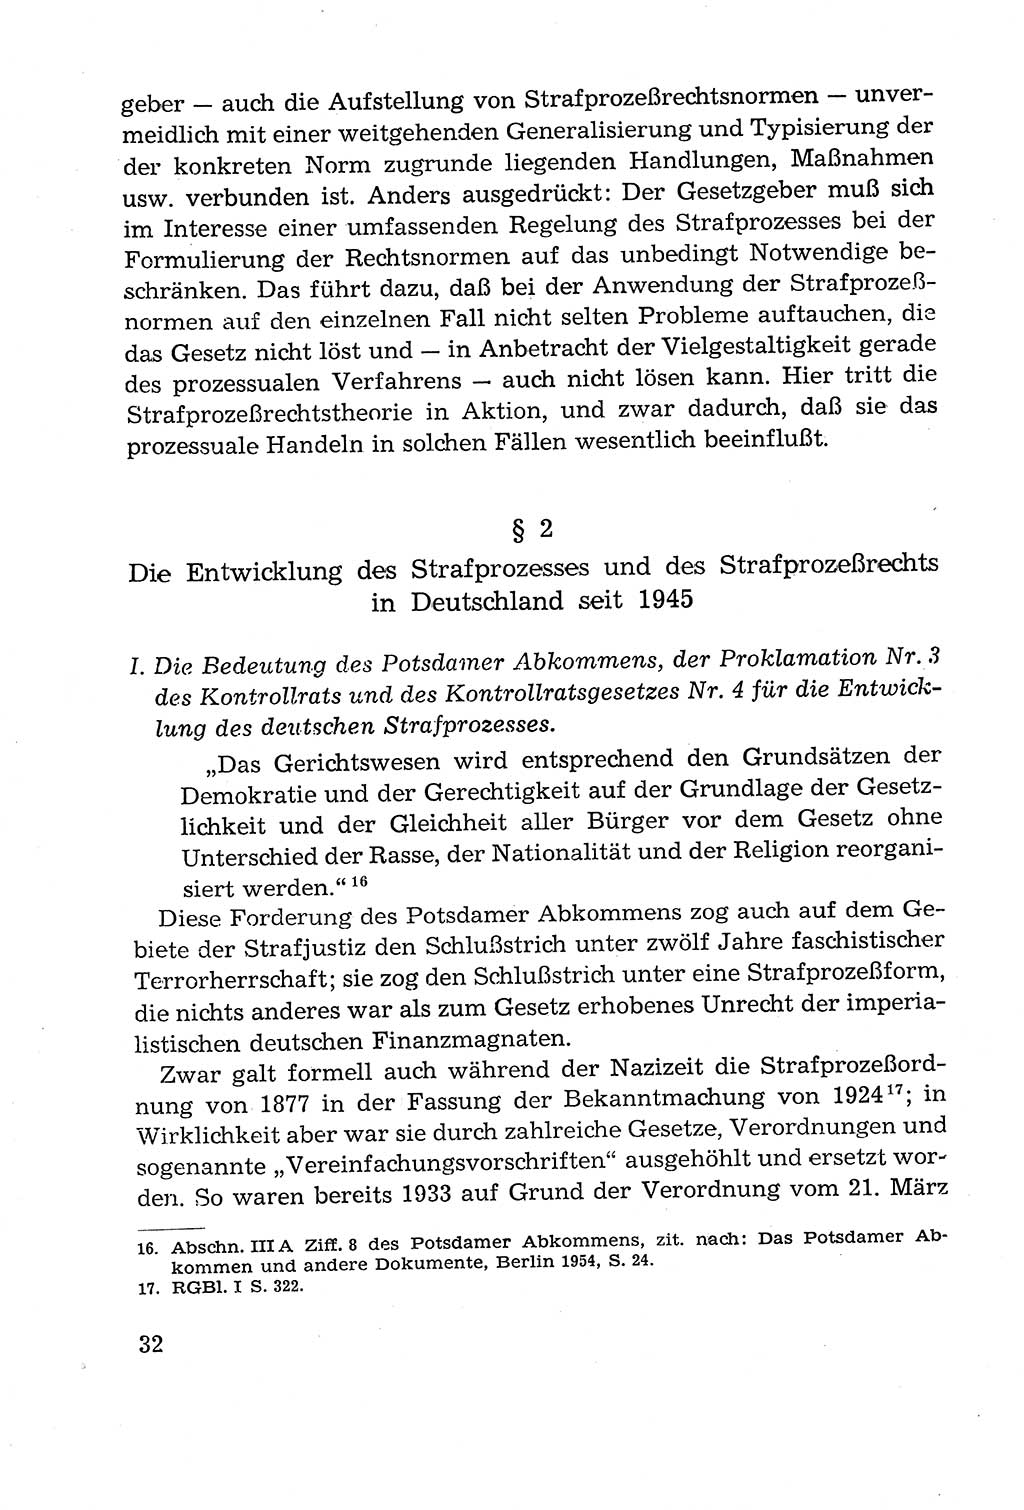 Leitfaden des Strafprozeßrechts der Deutschen Demokratischen Republik (DDR) 1959, Seite 32 (LF StPR DDR 1959, S. 32)